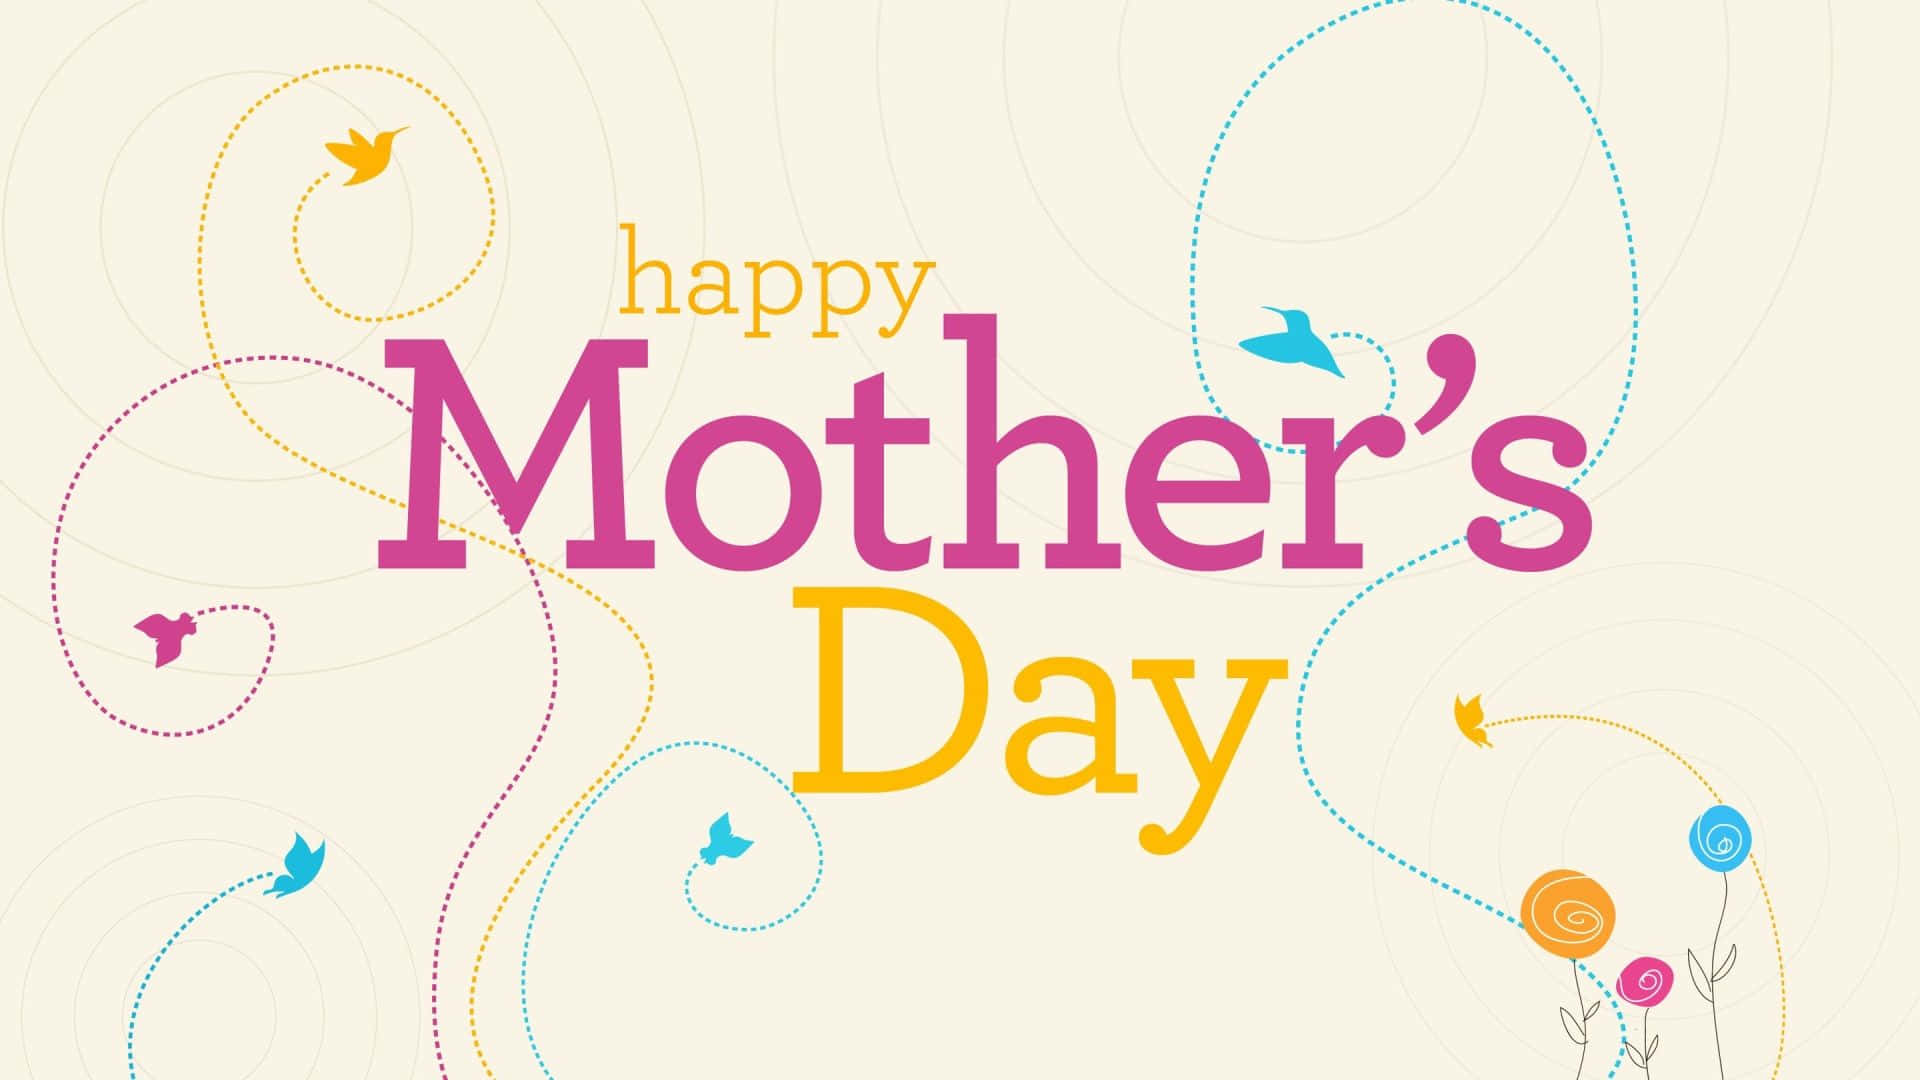 Feiernsie Diesen Besonderen Tag Mit Einem Happy Mother's Day Hd Wallpaper! Wallpaper